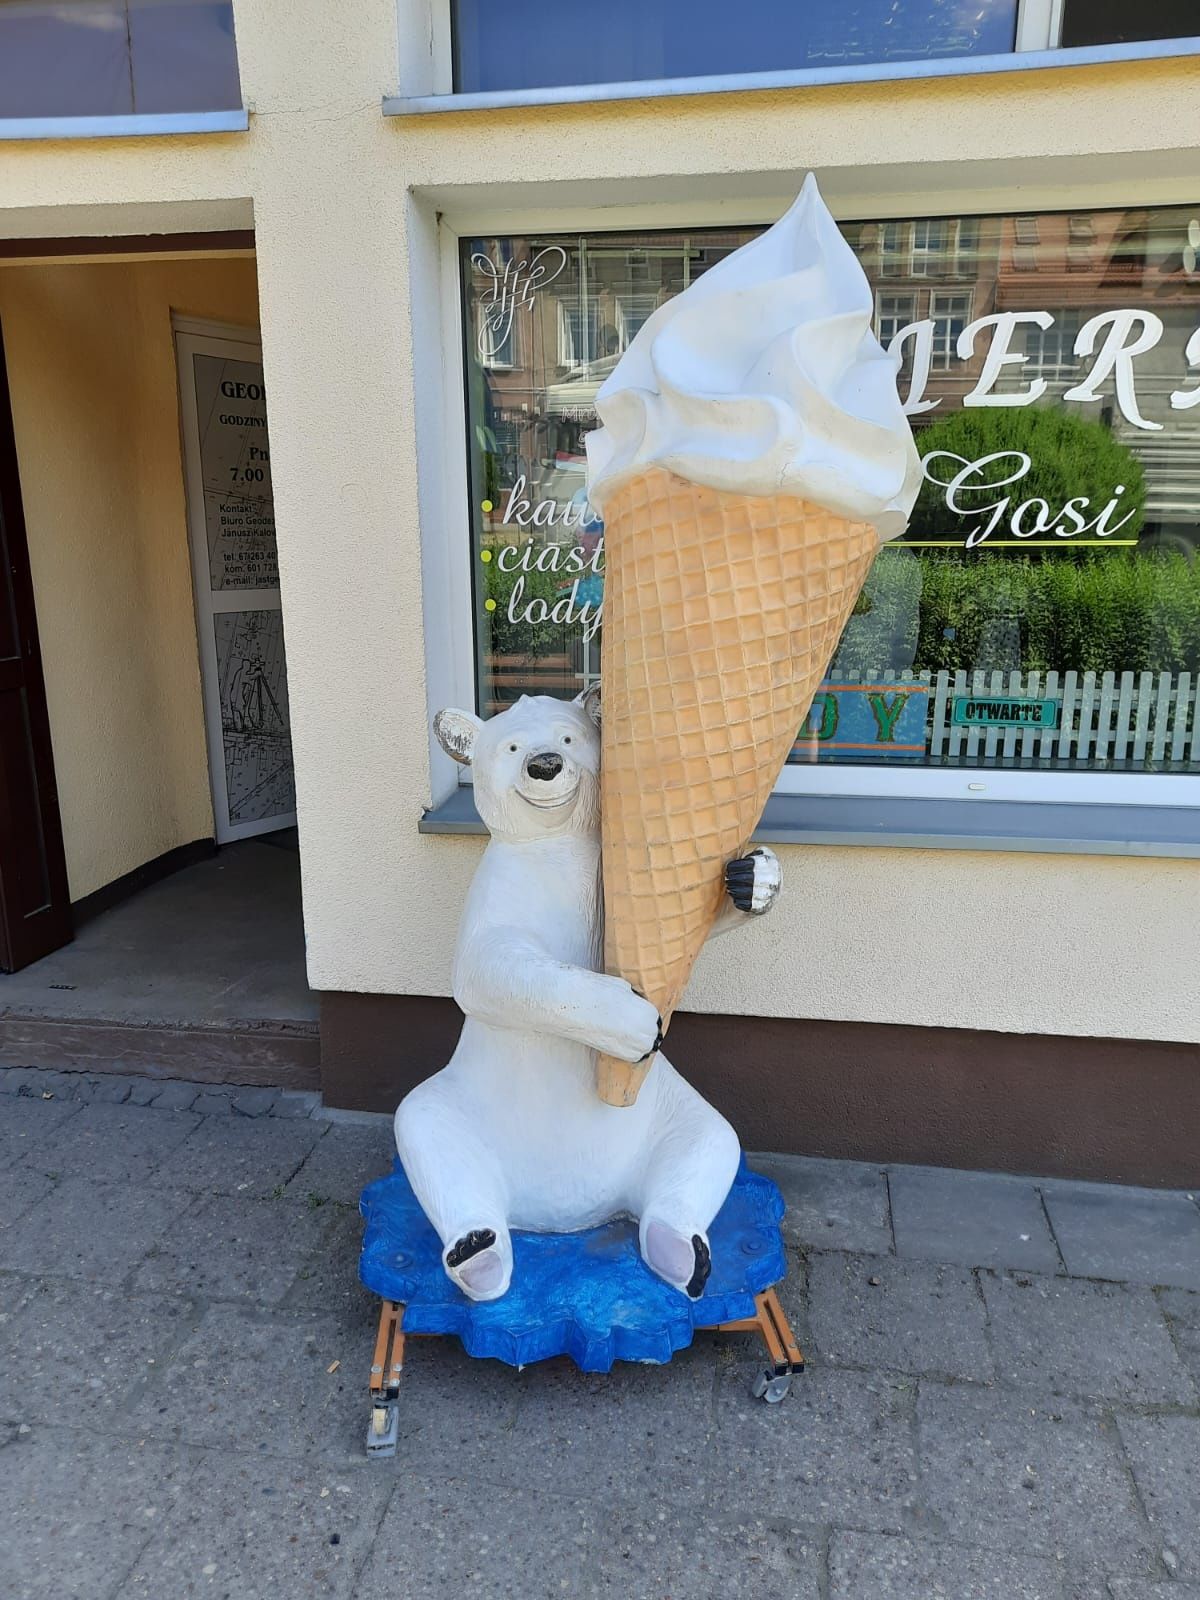 Reklama 3D, makieta misia z lodem, lody włoskie